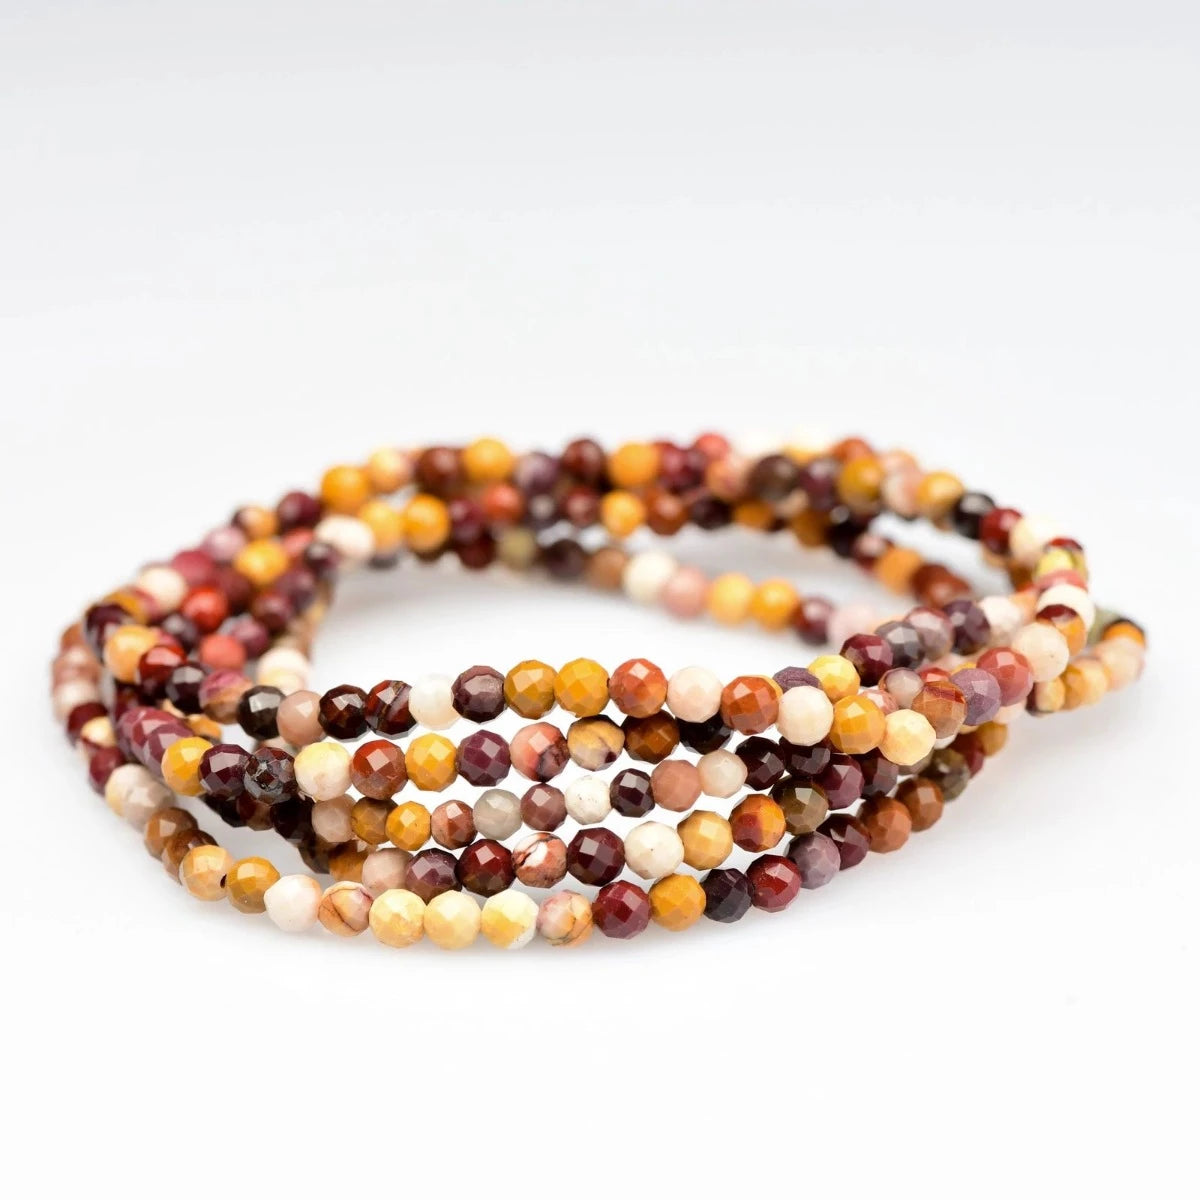 Mookaite Jasper Bracelet - Small Faceted Beads